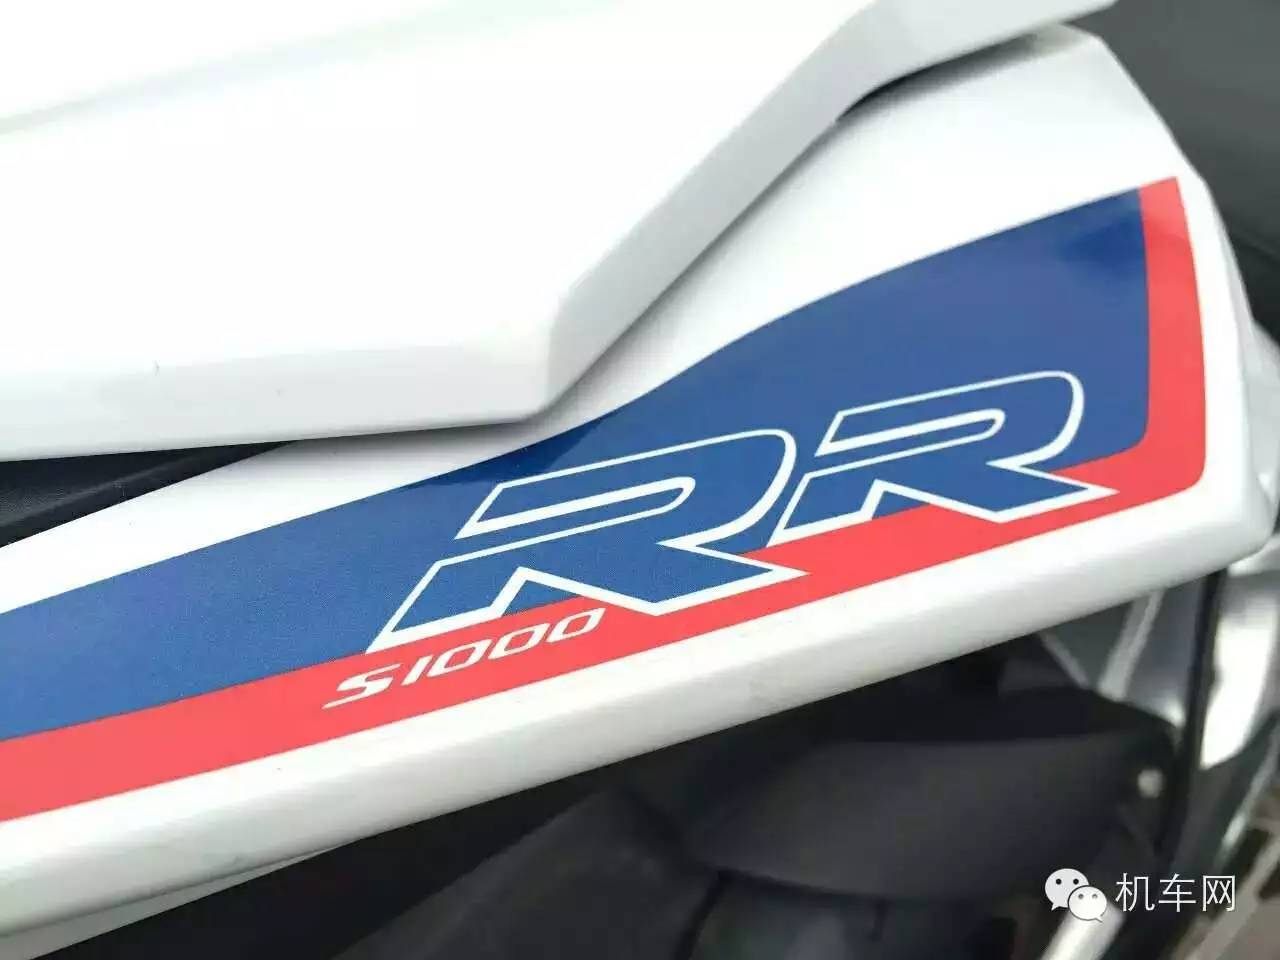 宝马S 1000 RR超级摩托车杀入中国，价格公布